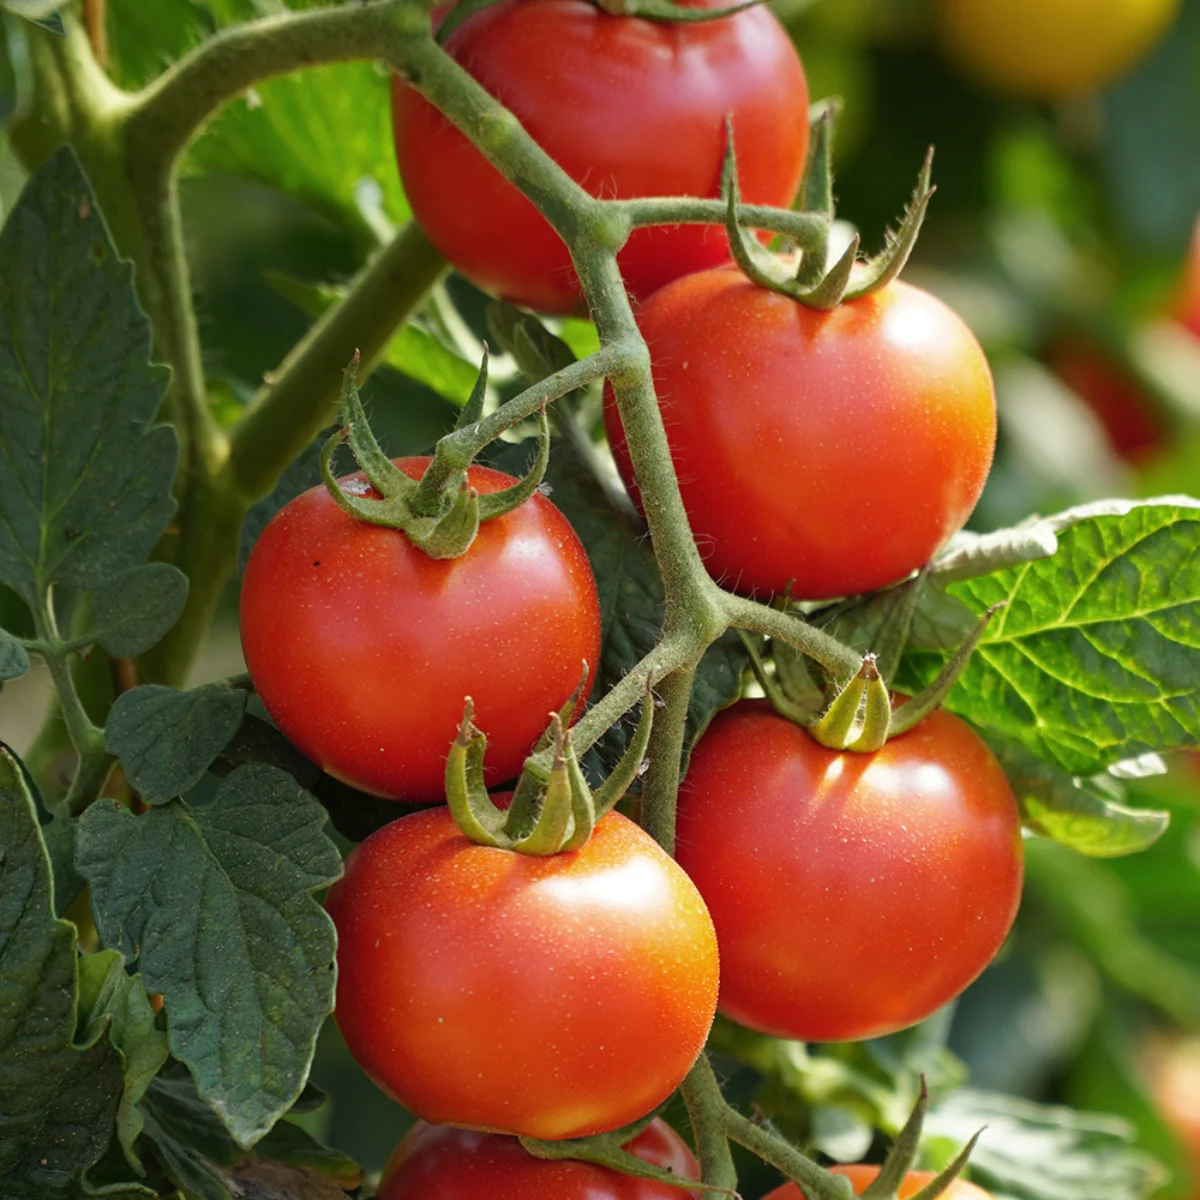 comment bien soigner ses plants de tomates pour qu ils prosperent